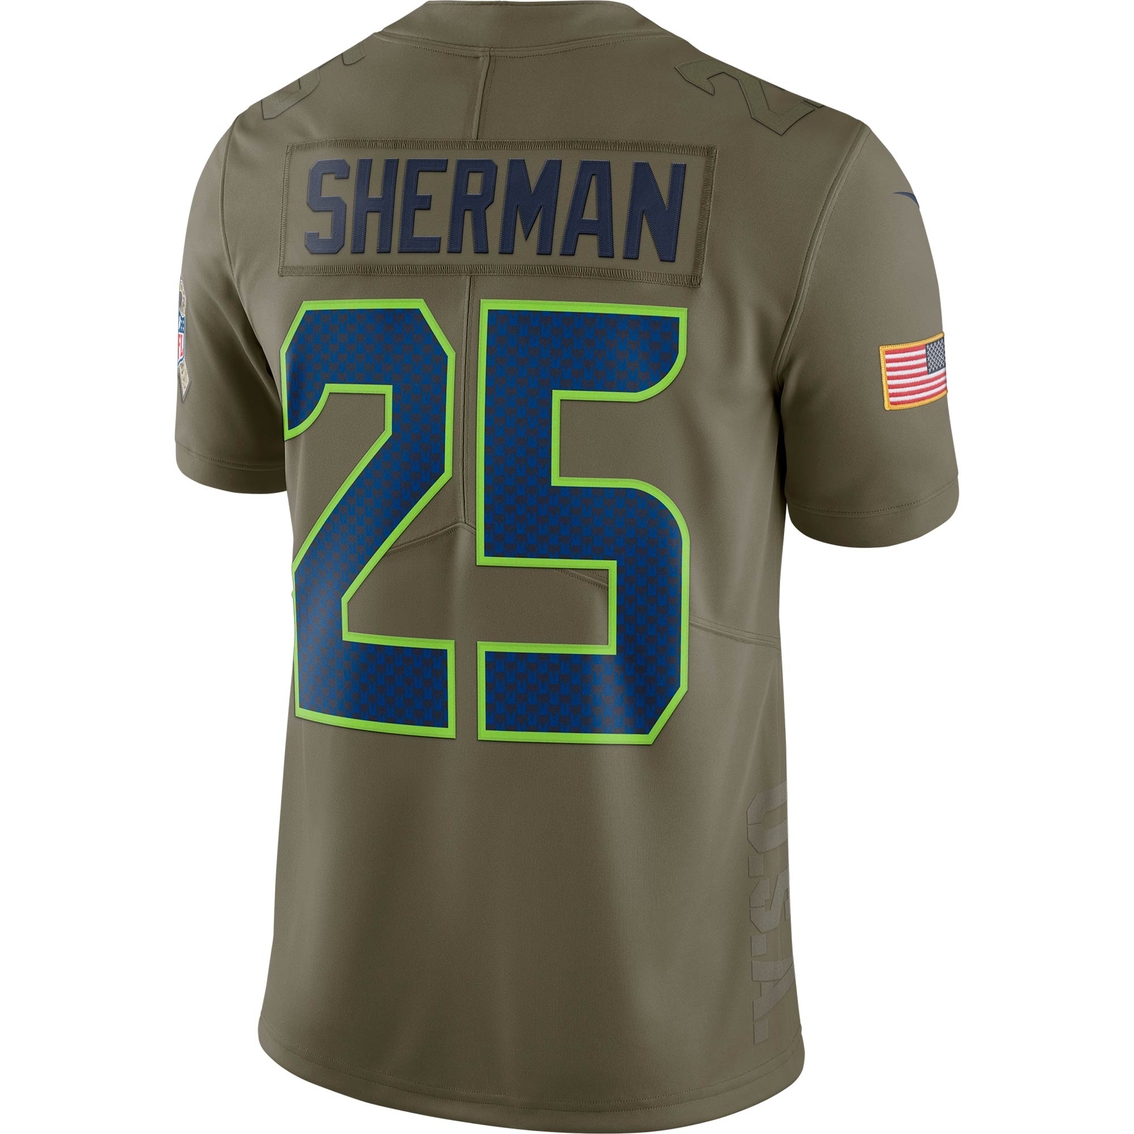 Nike NFL  Seattle Seahawks Sherman Jersey - Image 2 of 2